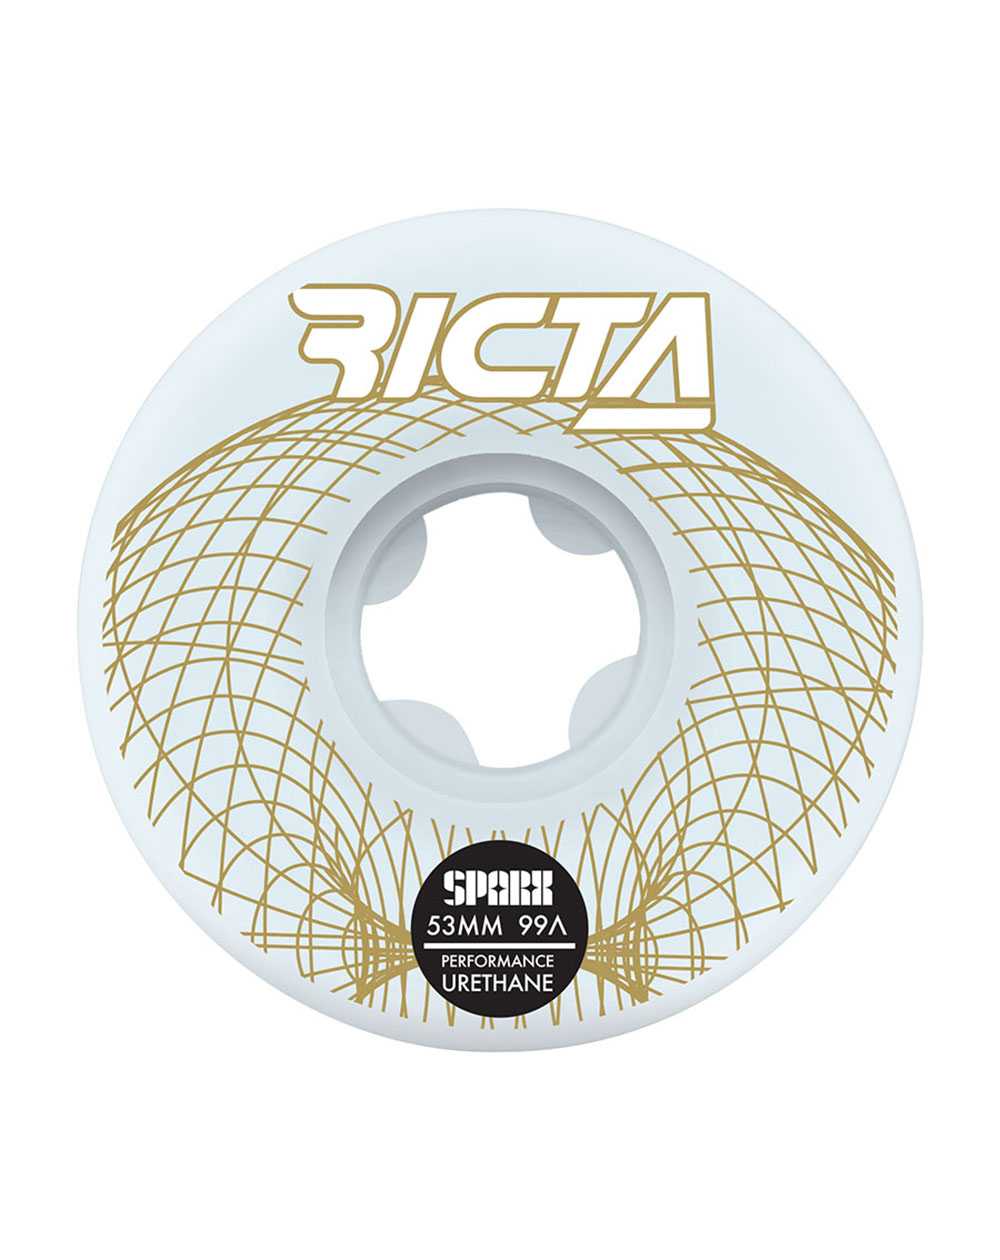 Ricta Wireframe Sparx 53mm 99A Skateboard Räder 4 er Pack